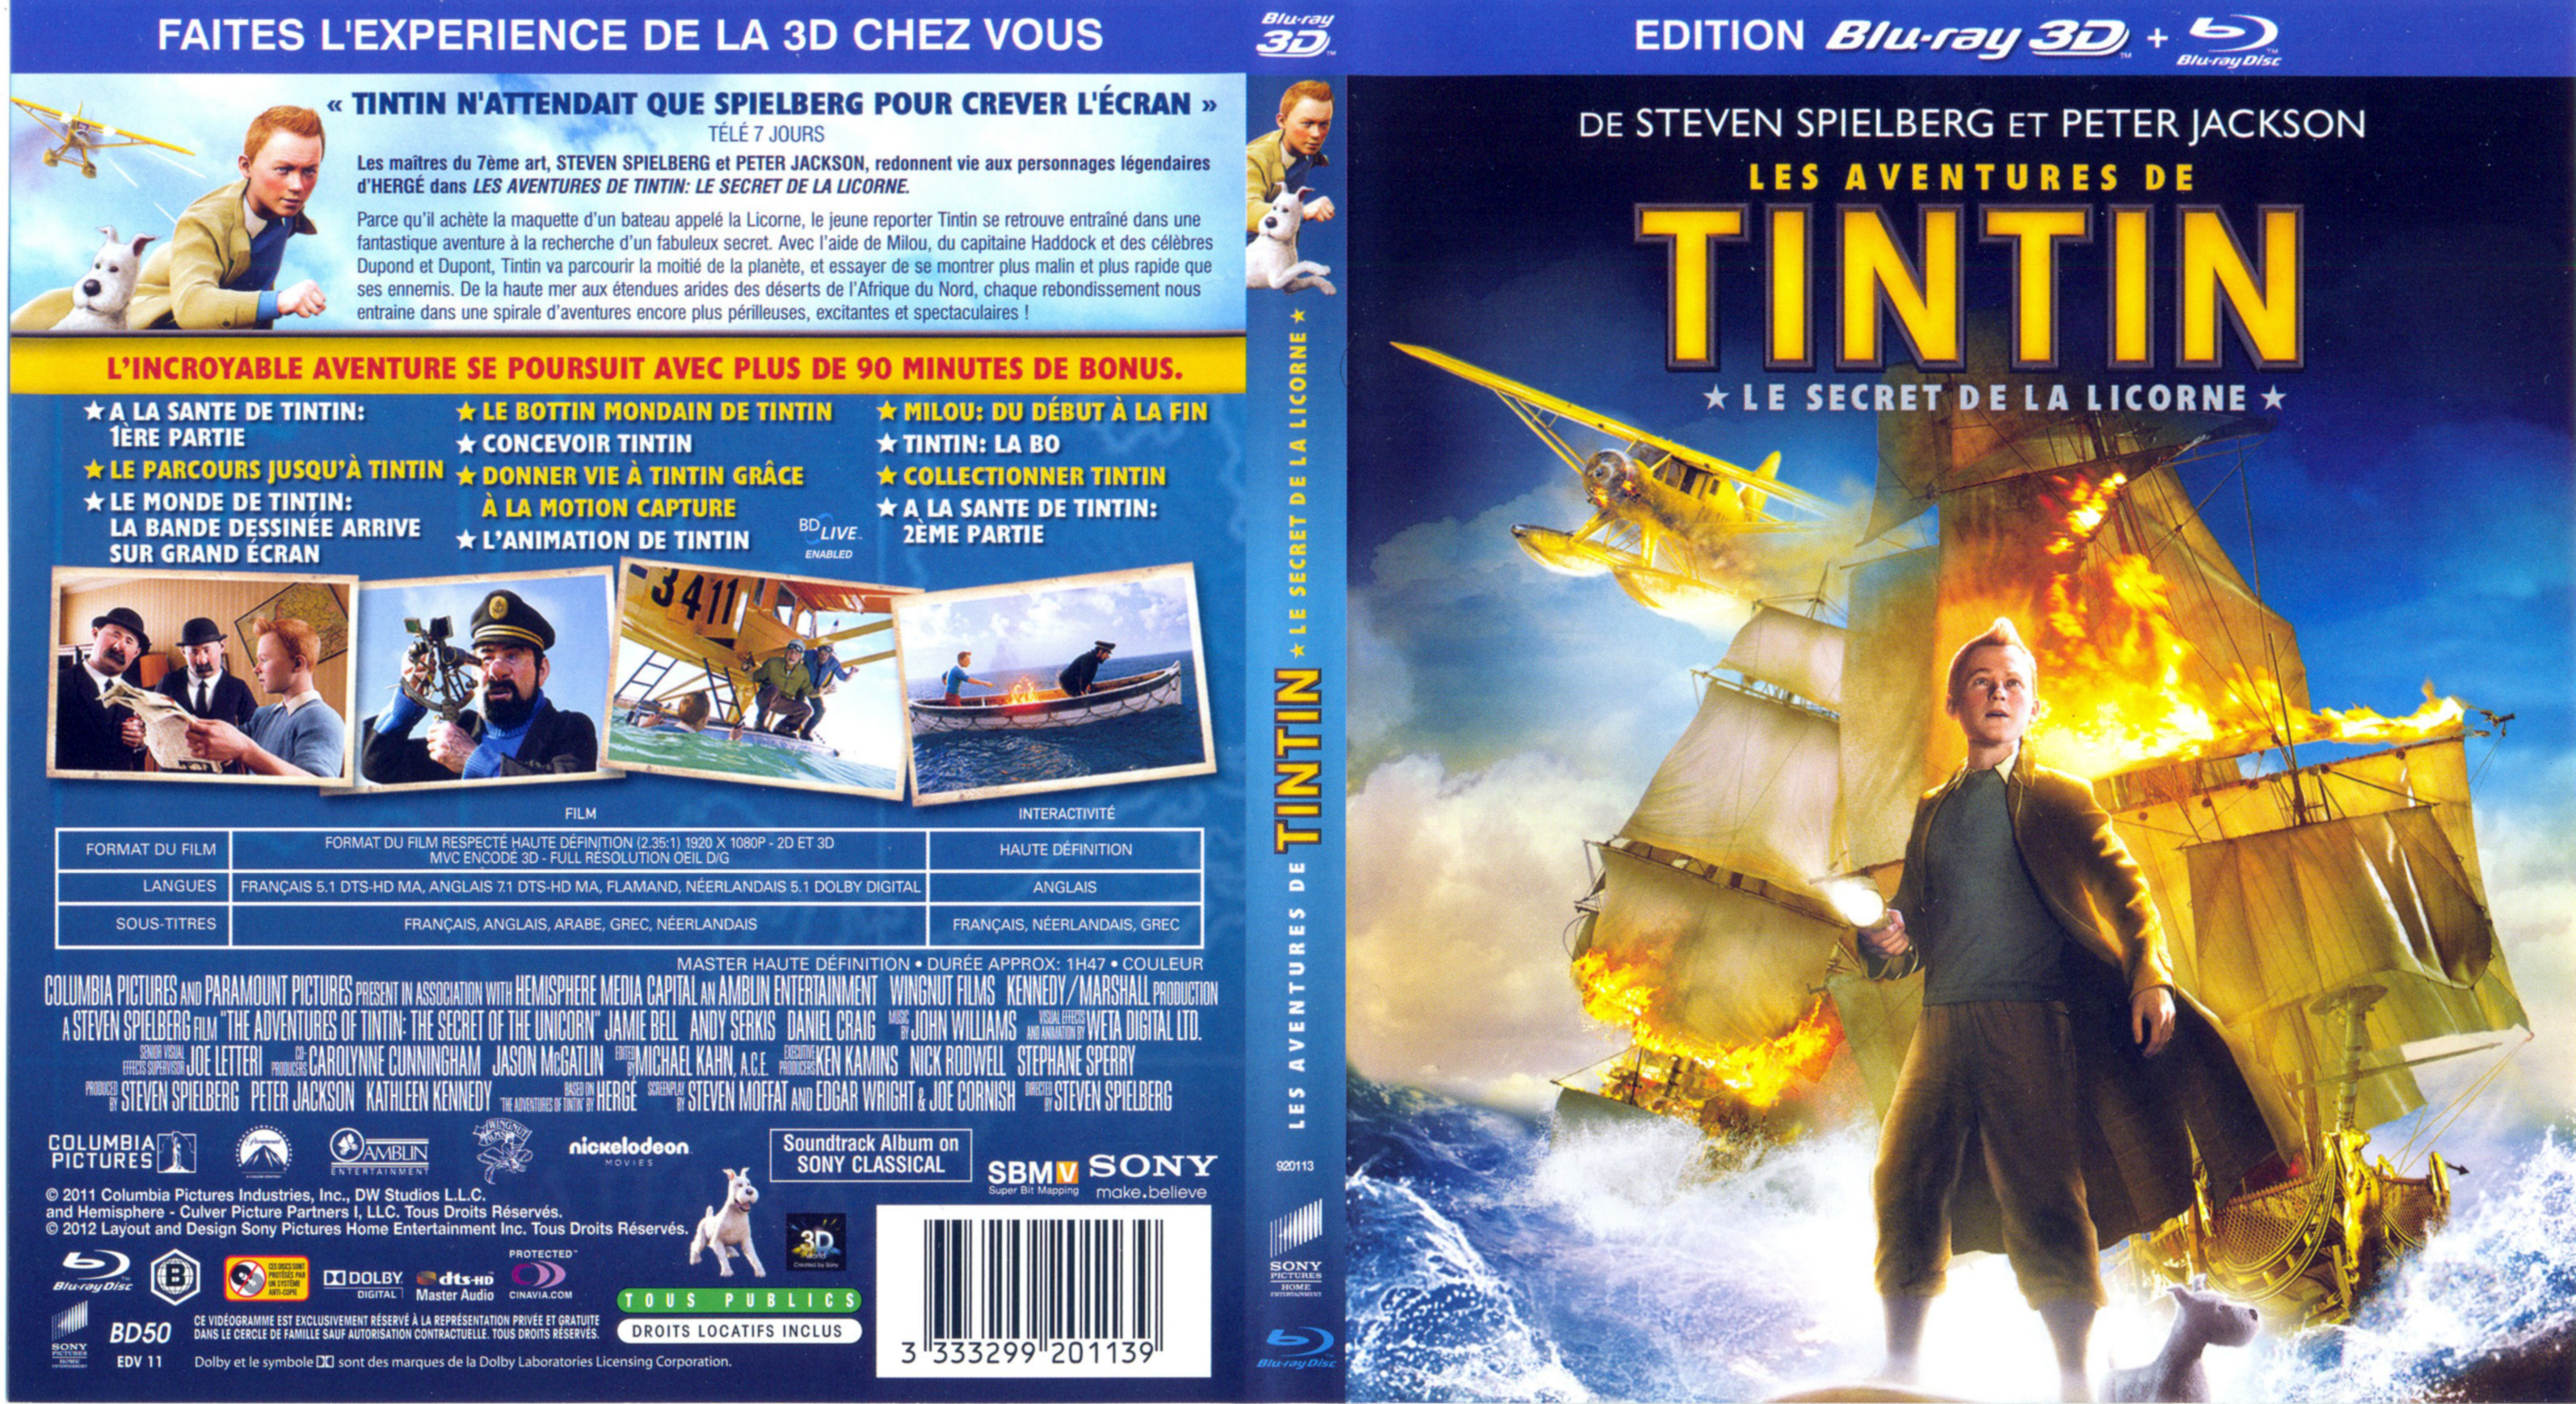 Jaquette DVD Les aventures de Tintin le secret de la Licorne 3D (BLU-RAY)